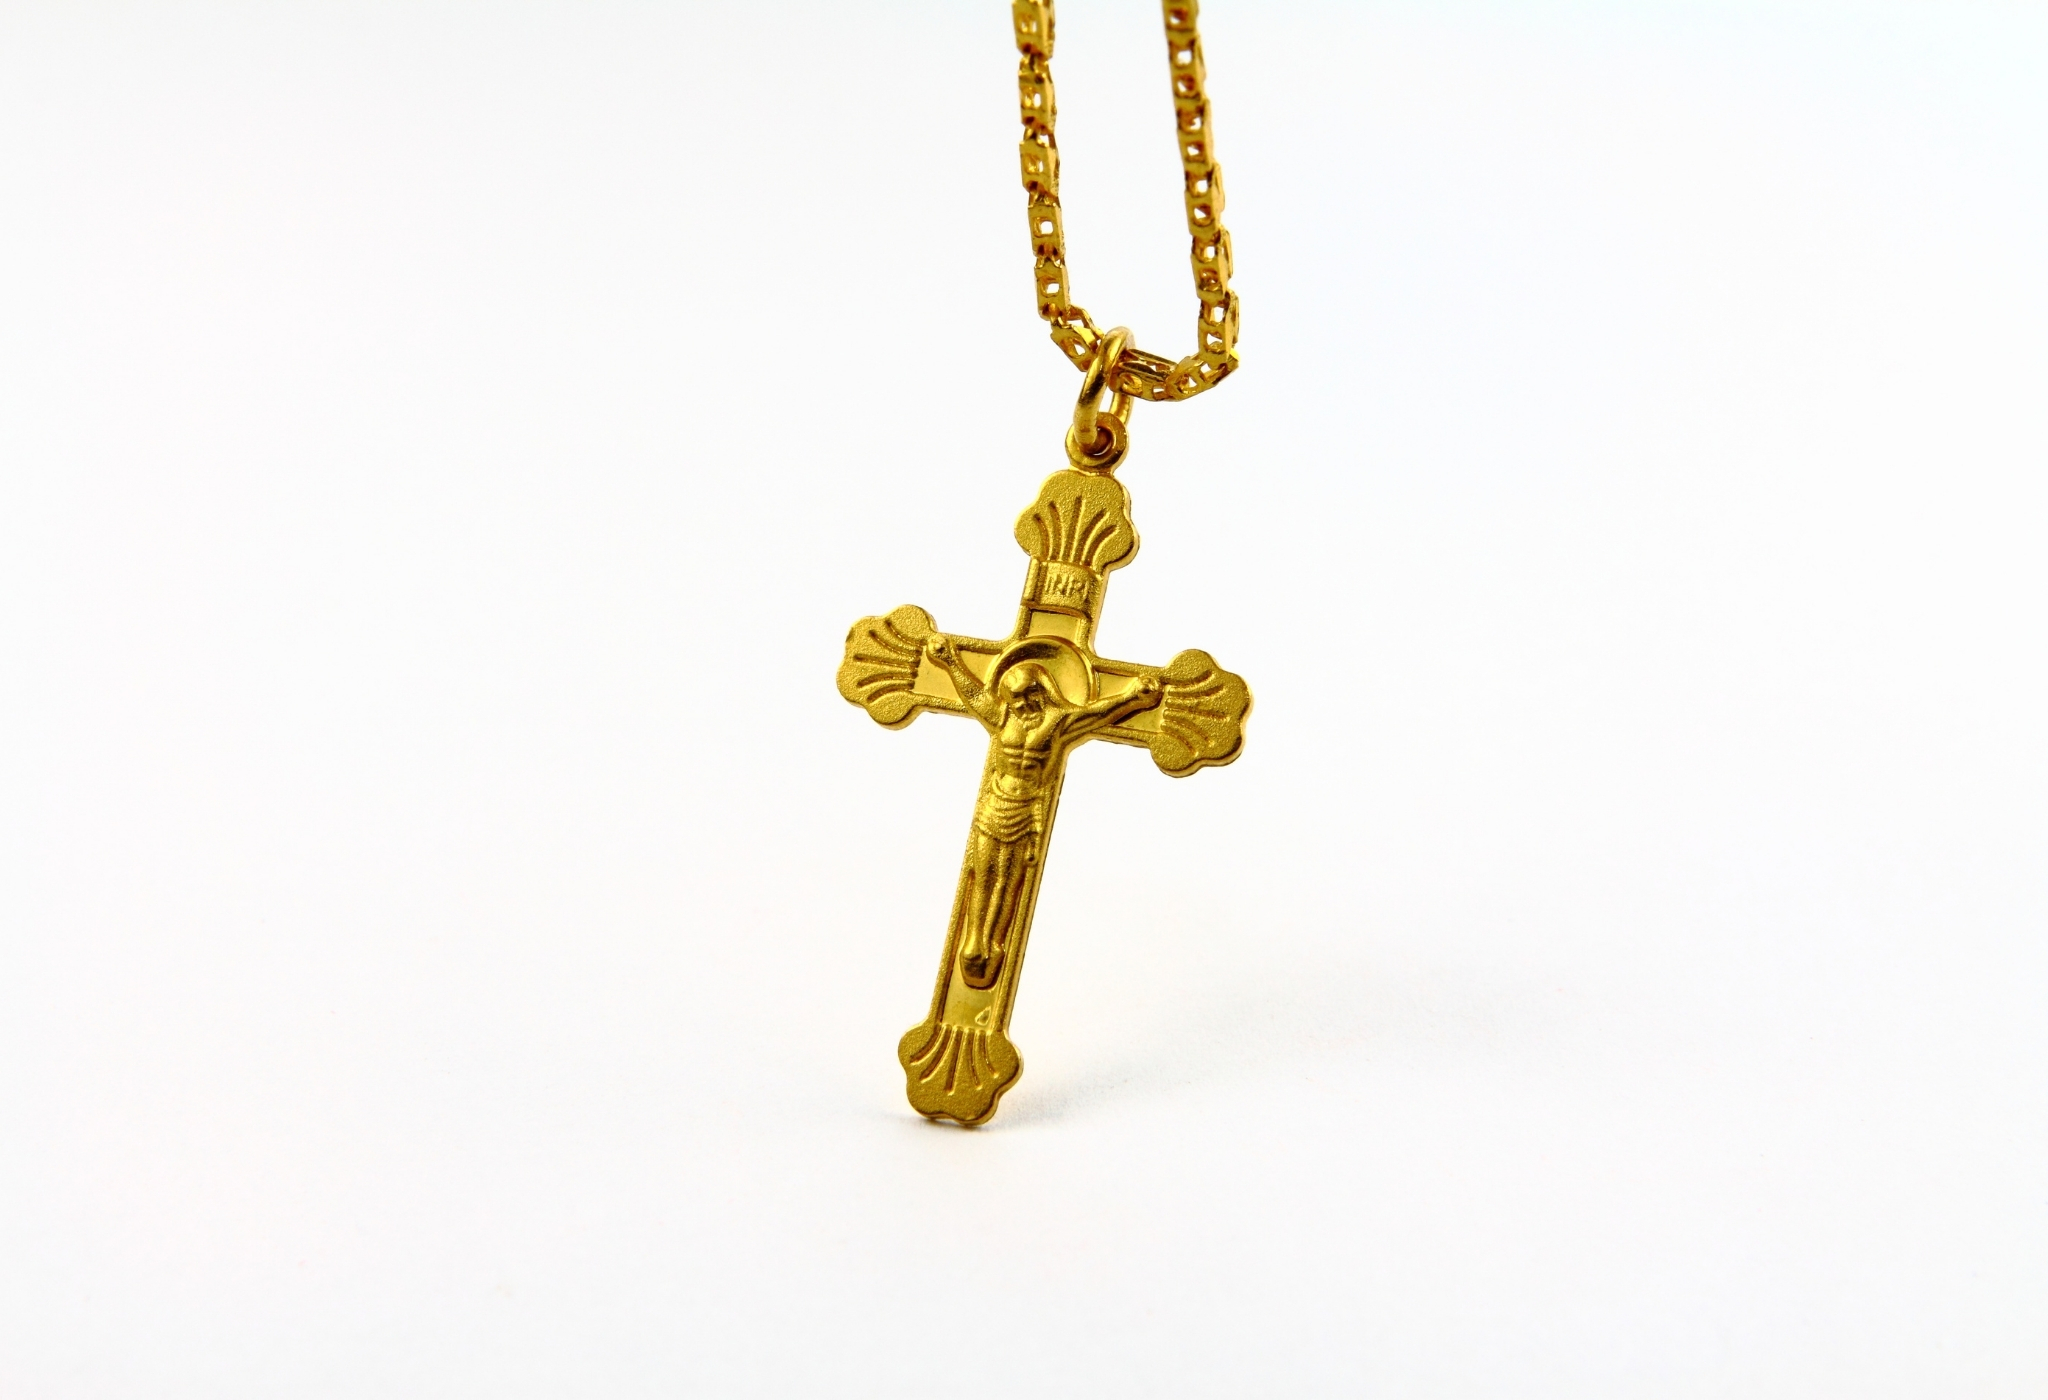 Religiöse Anhänger wie ein goldenes Kreuz sind die Art und Weise, wie Männer Halsketten tragen